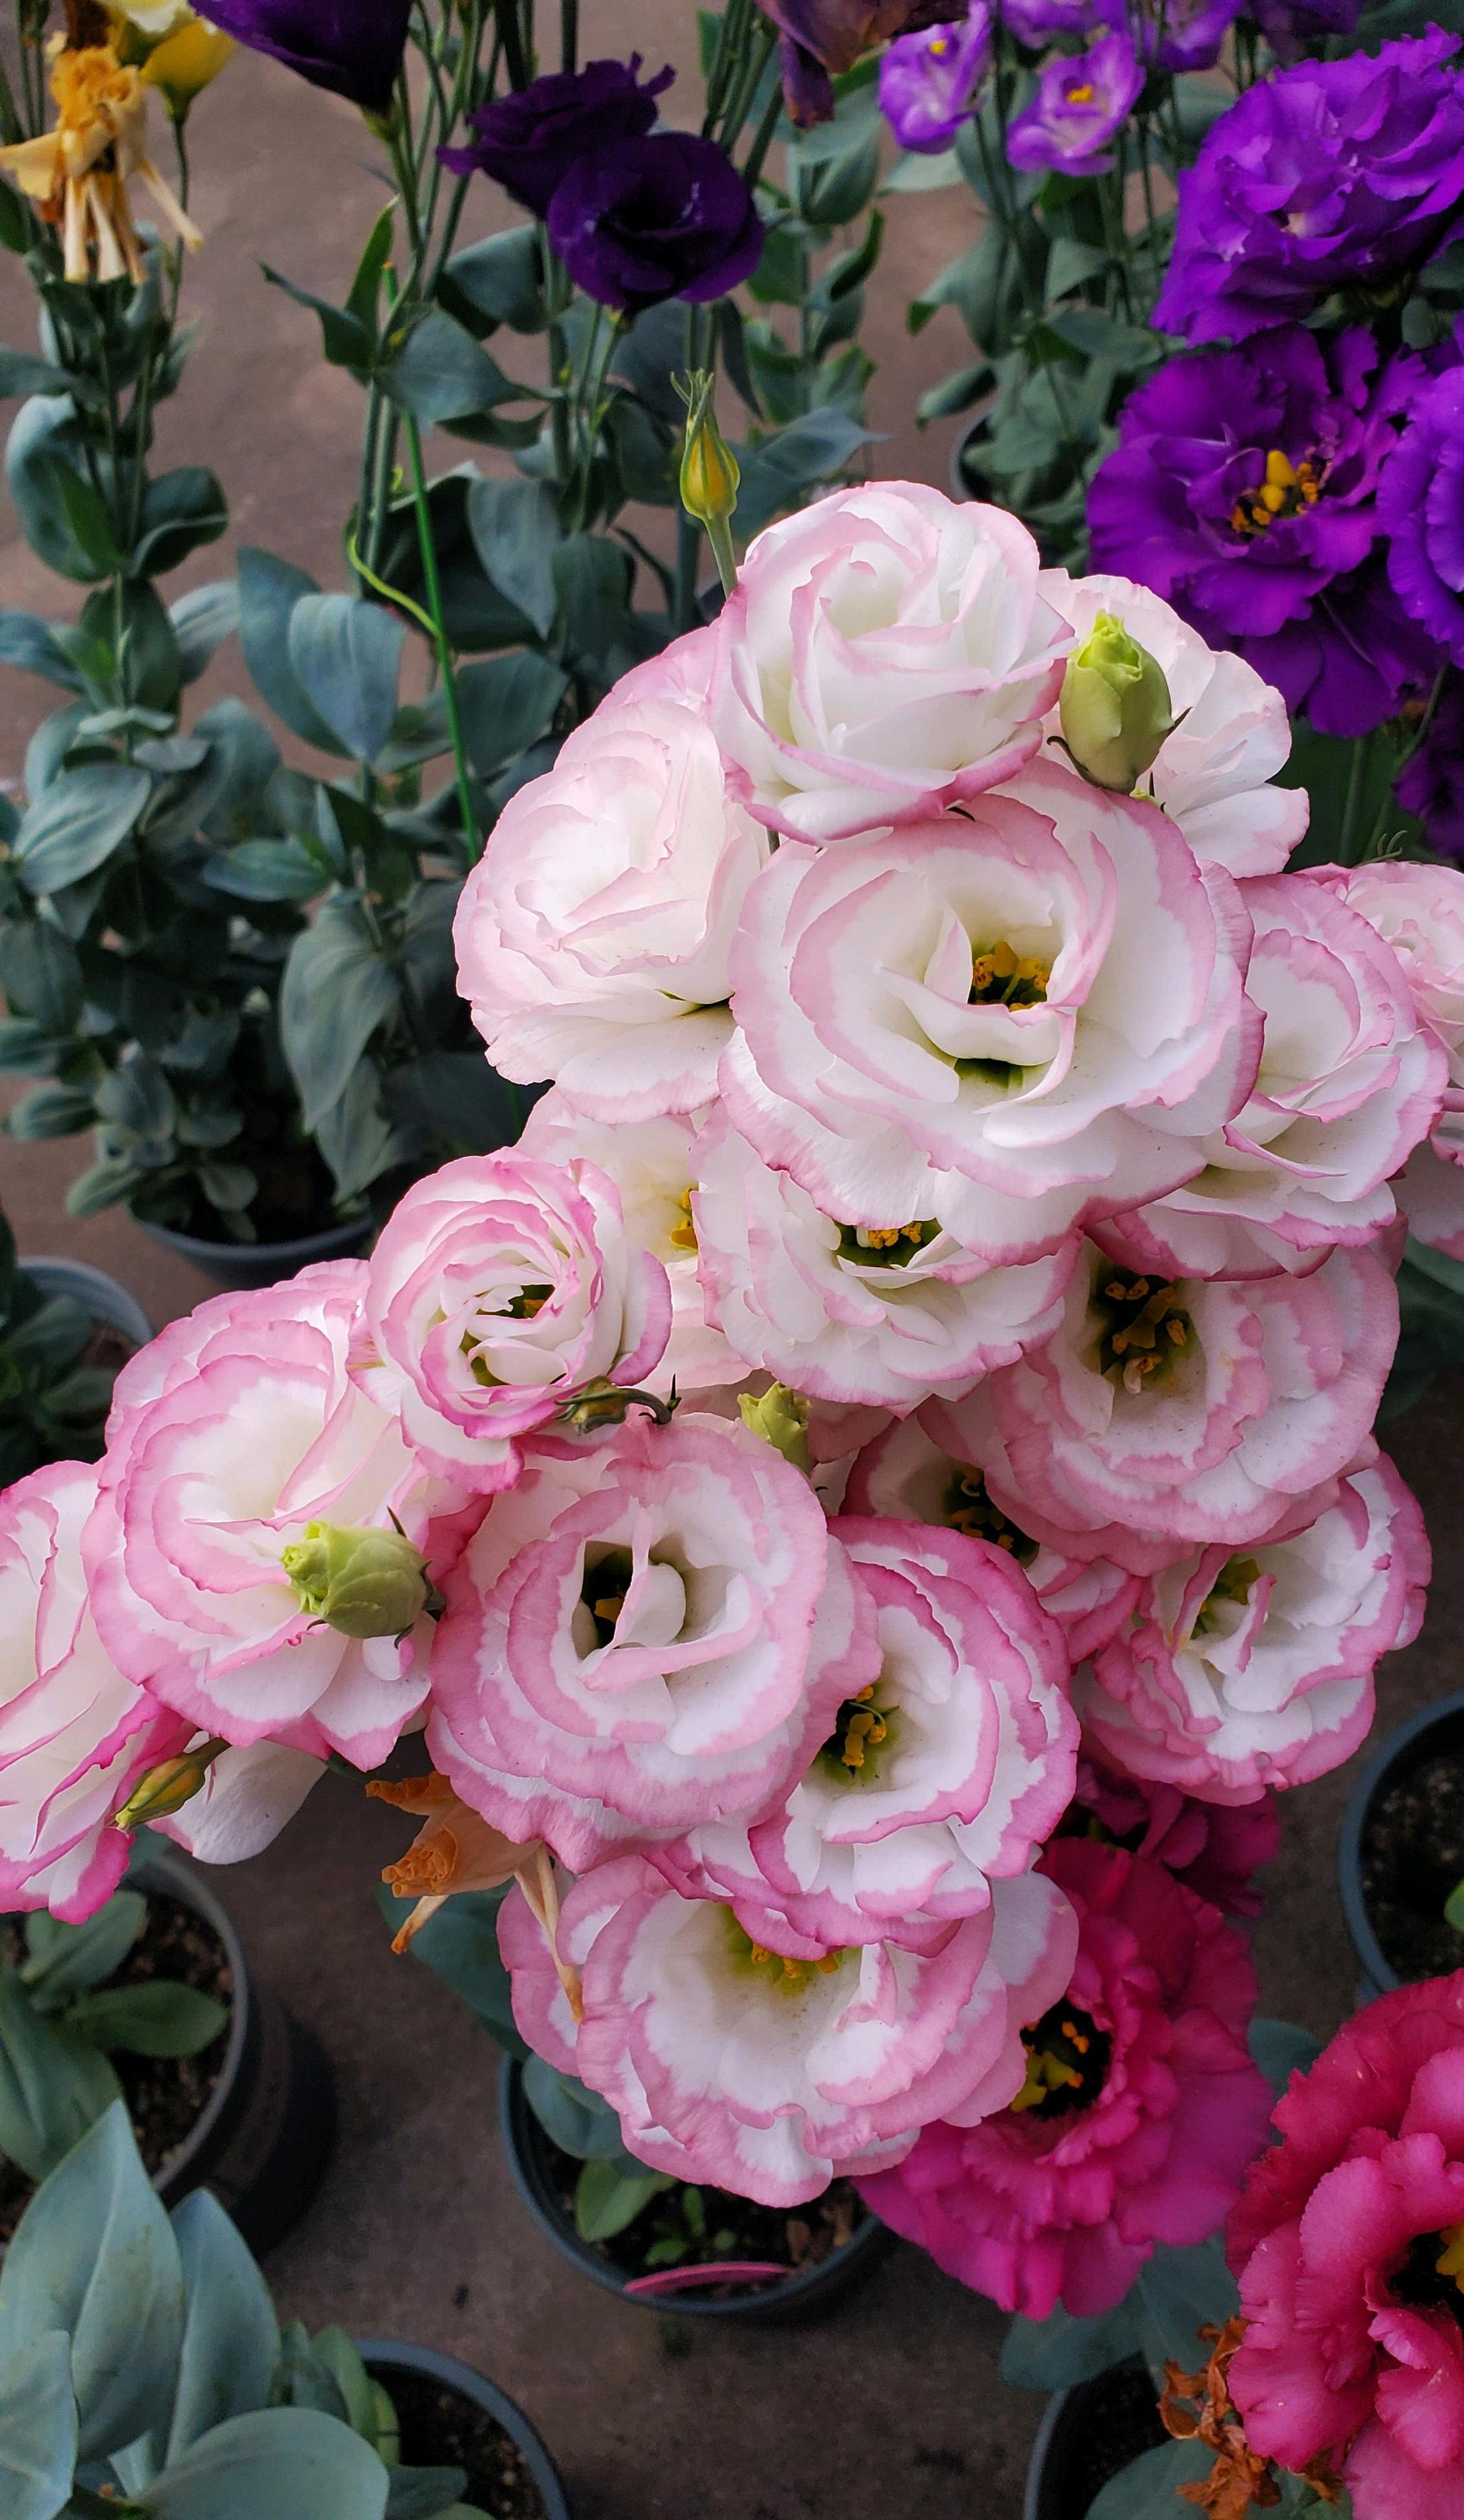 世界四大名花之一"洋桔梗",比玫瑰还美,花开四季,阳台